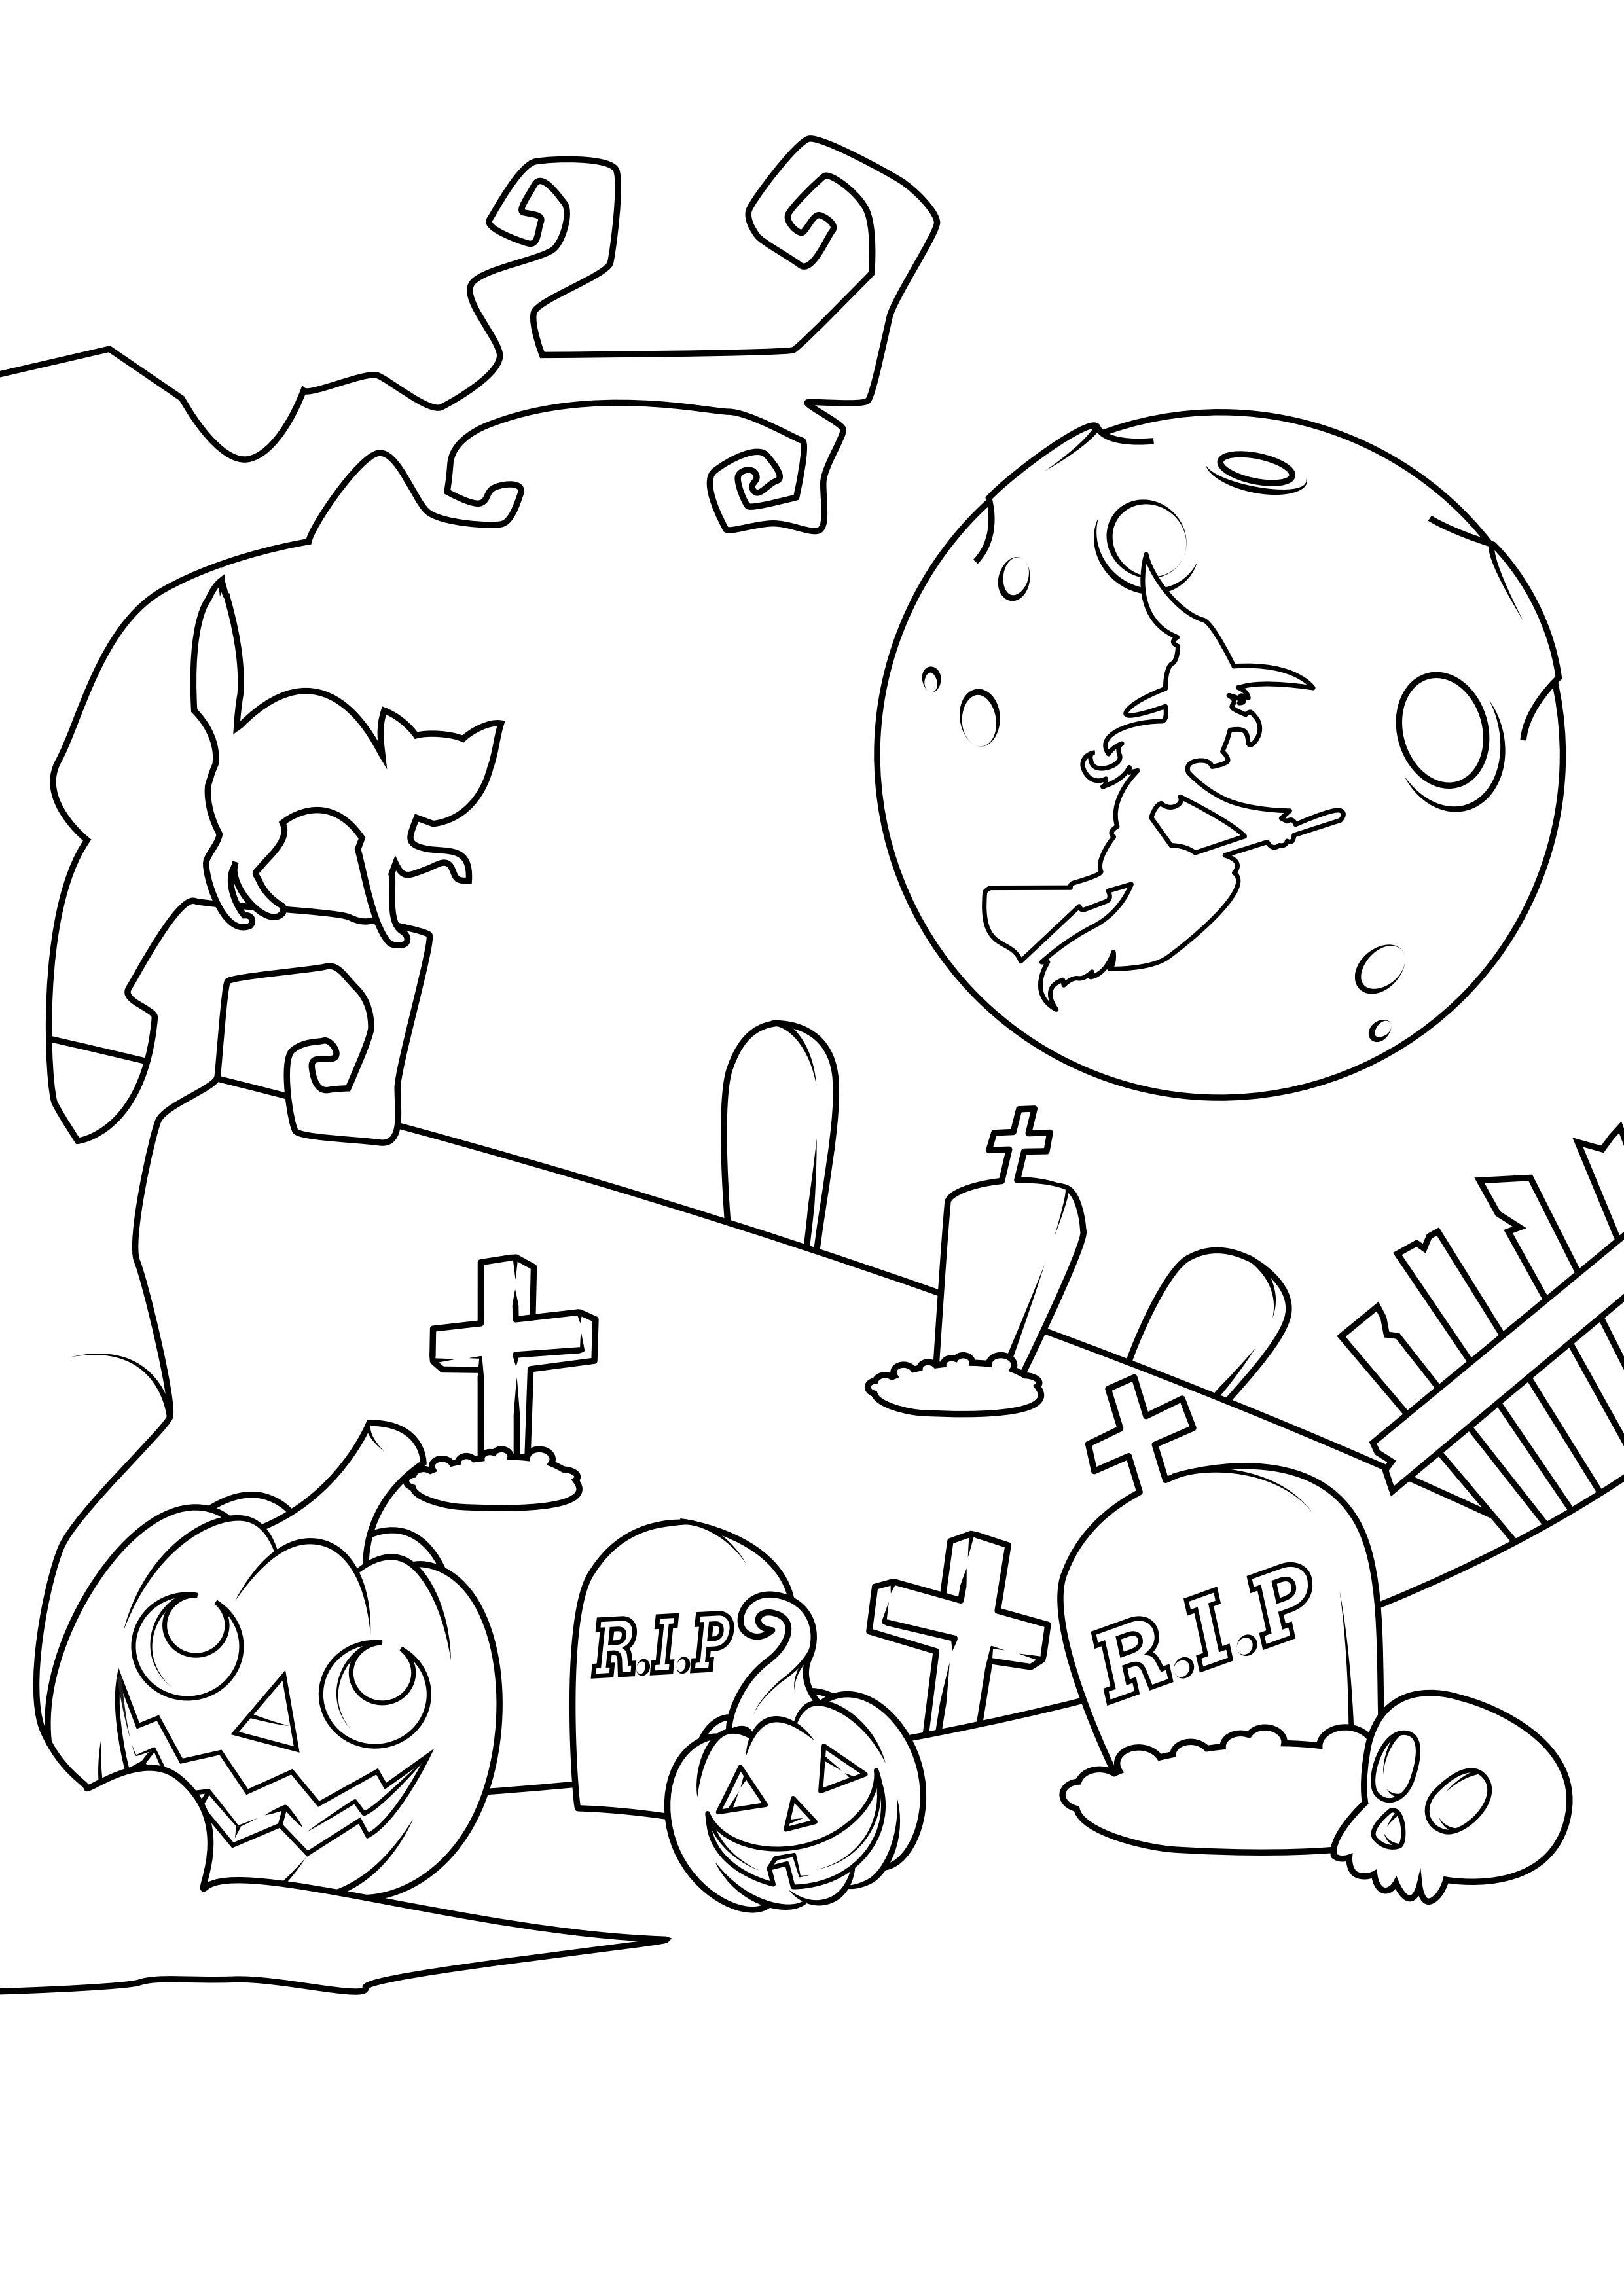 Dibujo para colorear cementerio de halloween